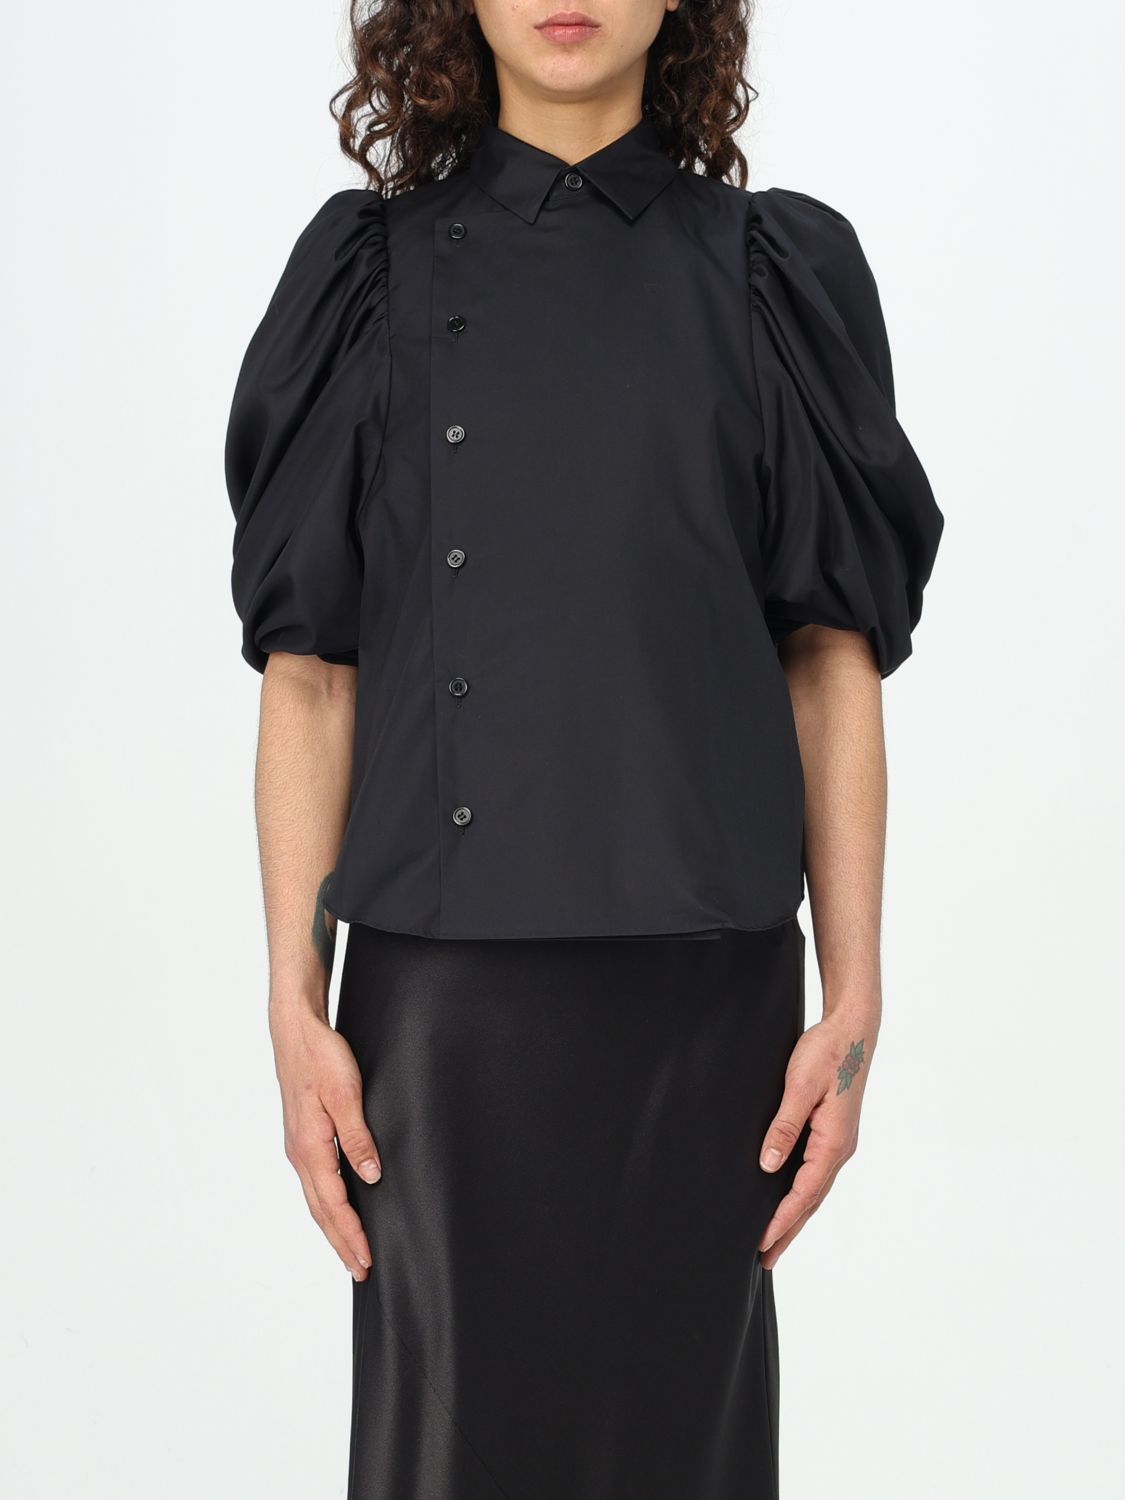 Noir Kei Ninomiya Shirt NOIR KEI NINOMIYA Woman color Black